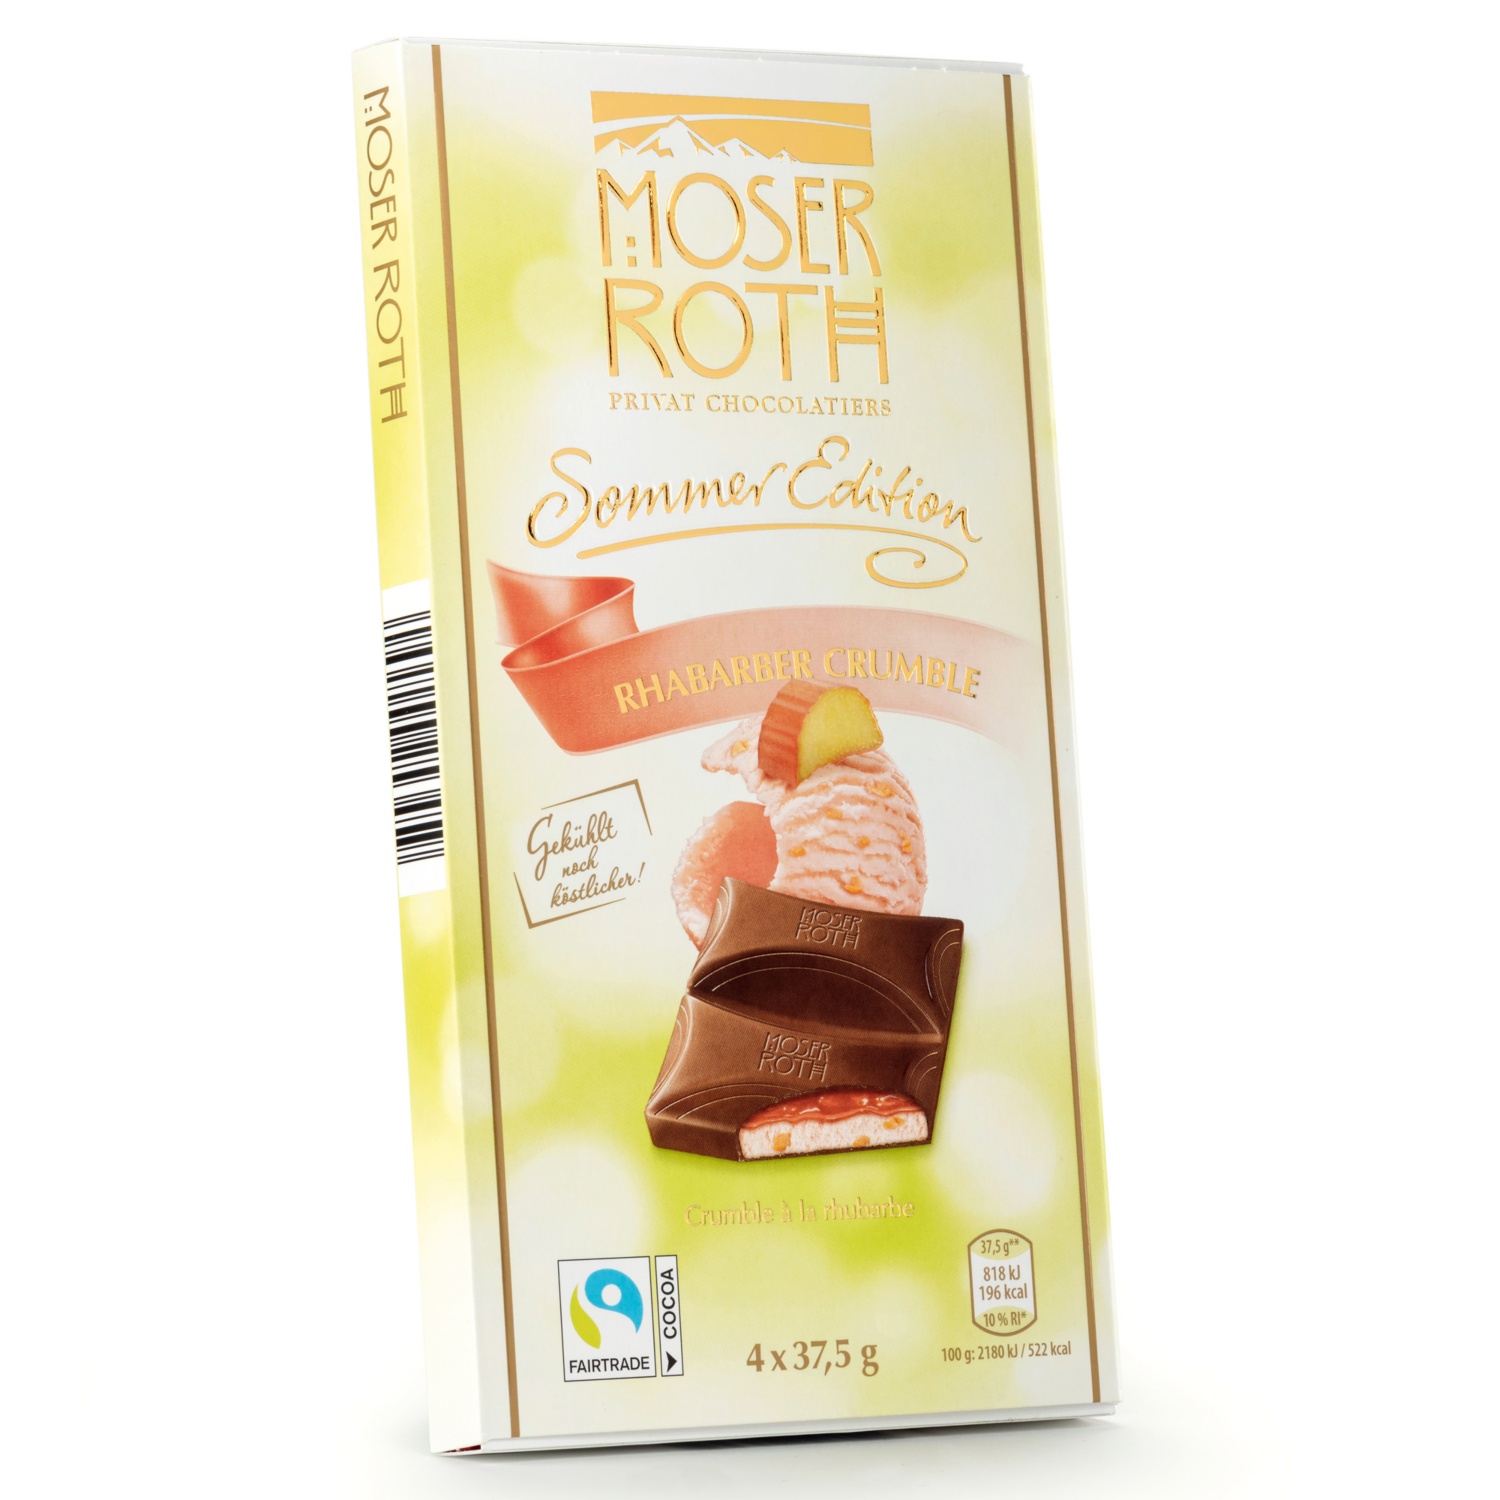 MOSER ROTH Gefüllte Sommerschokolade, Rhabarber Crumble